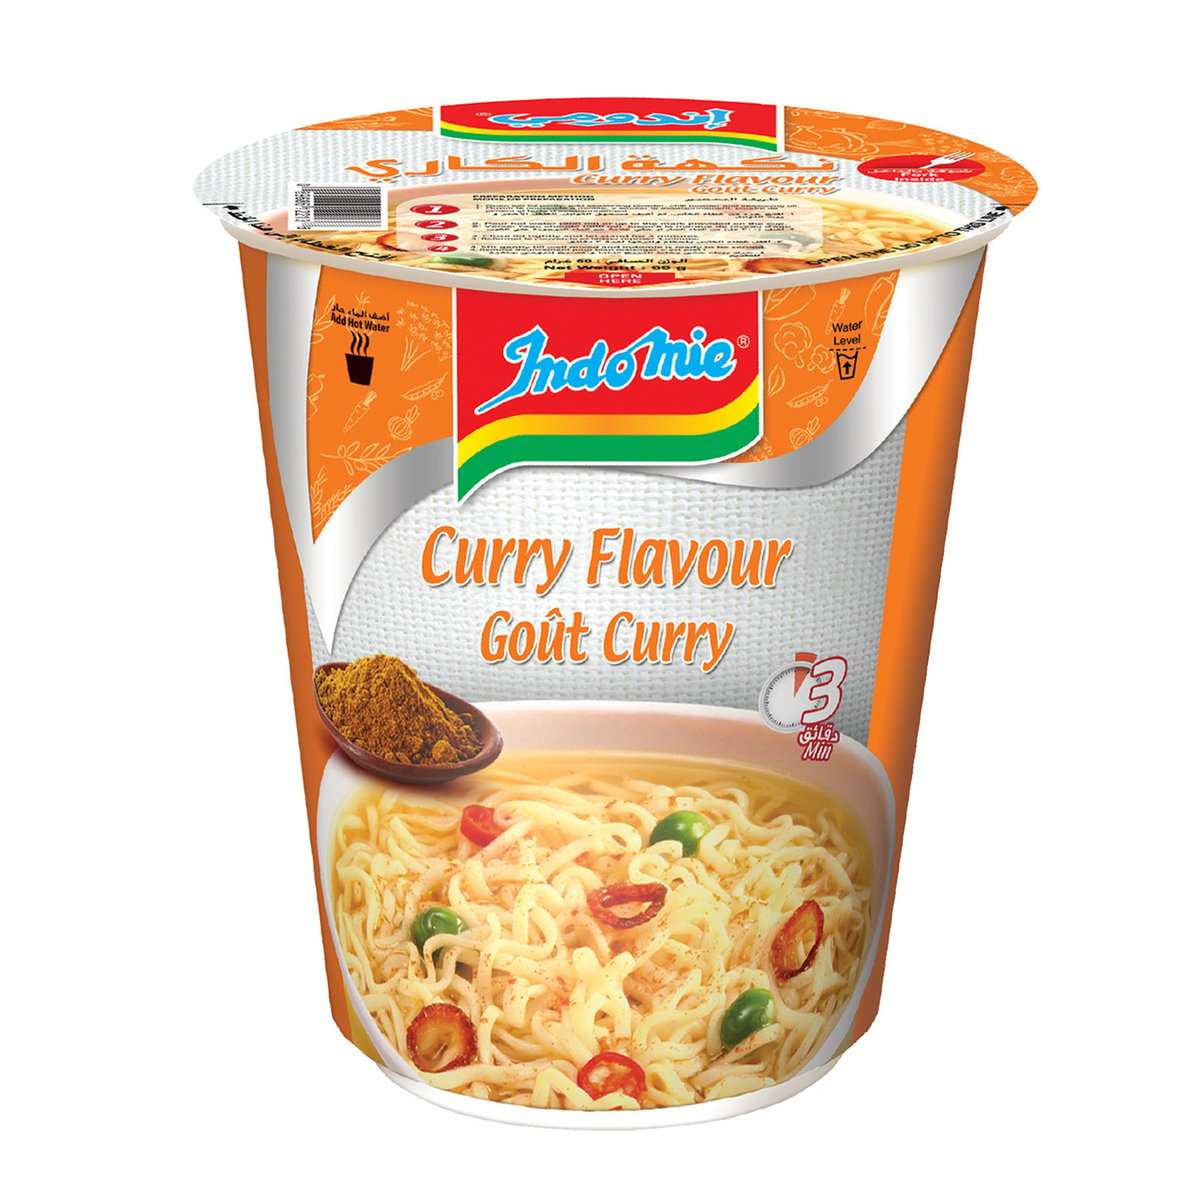 اشتري قم بشراء إندومي نودلز بنكهة الكاري كوب 60 جم Online at Best Price من الموقع - من لولو هايبر ماركت Cup Noodle في مصر